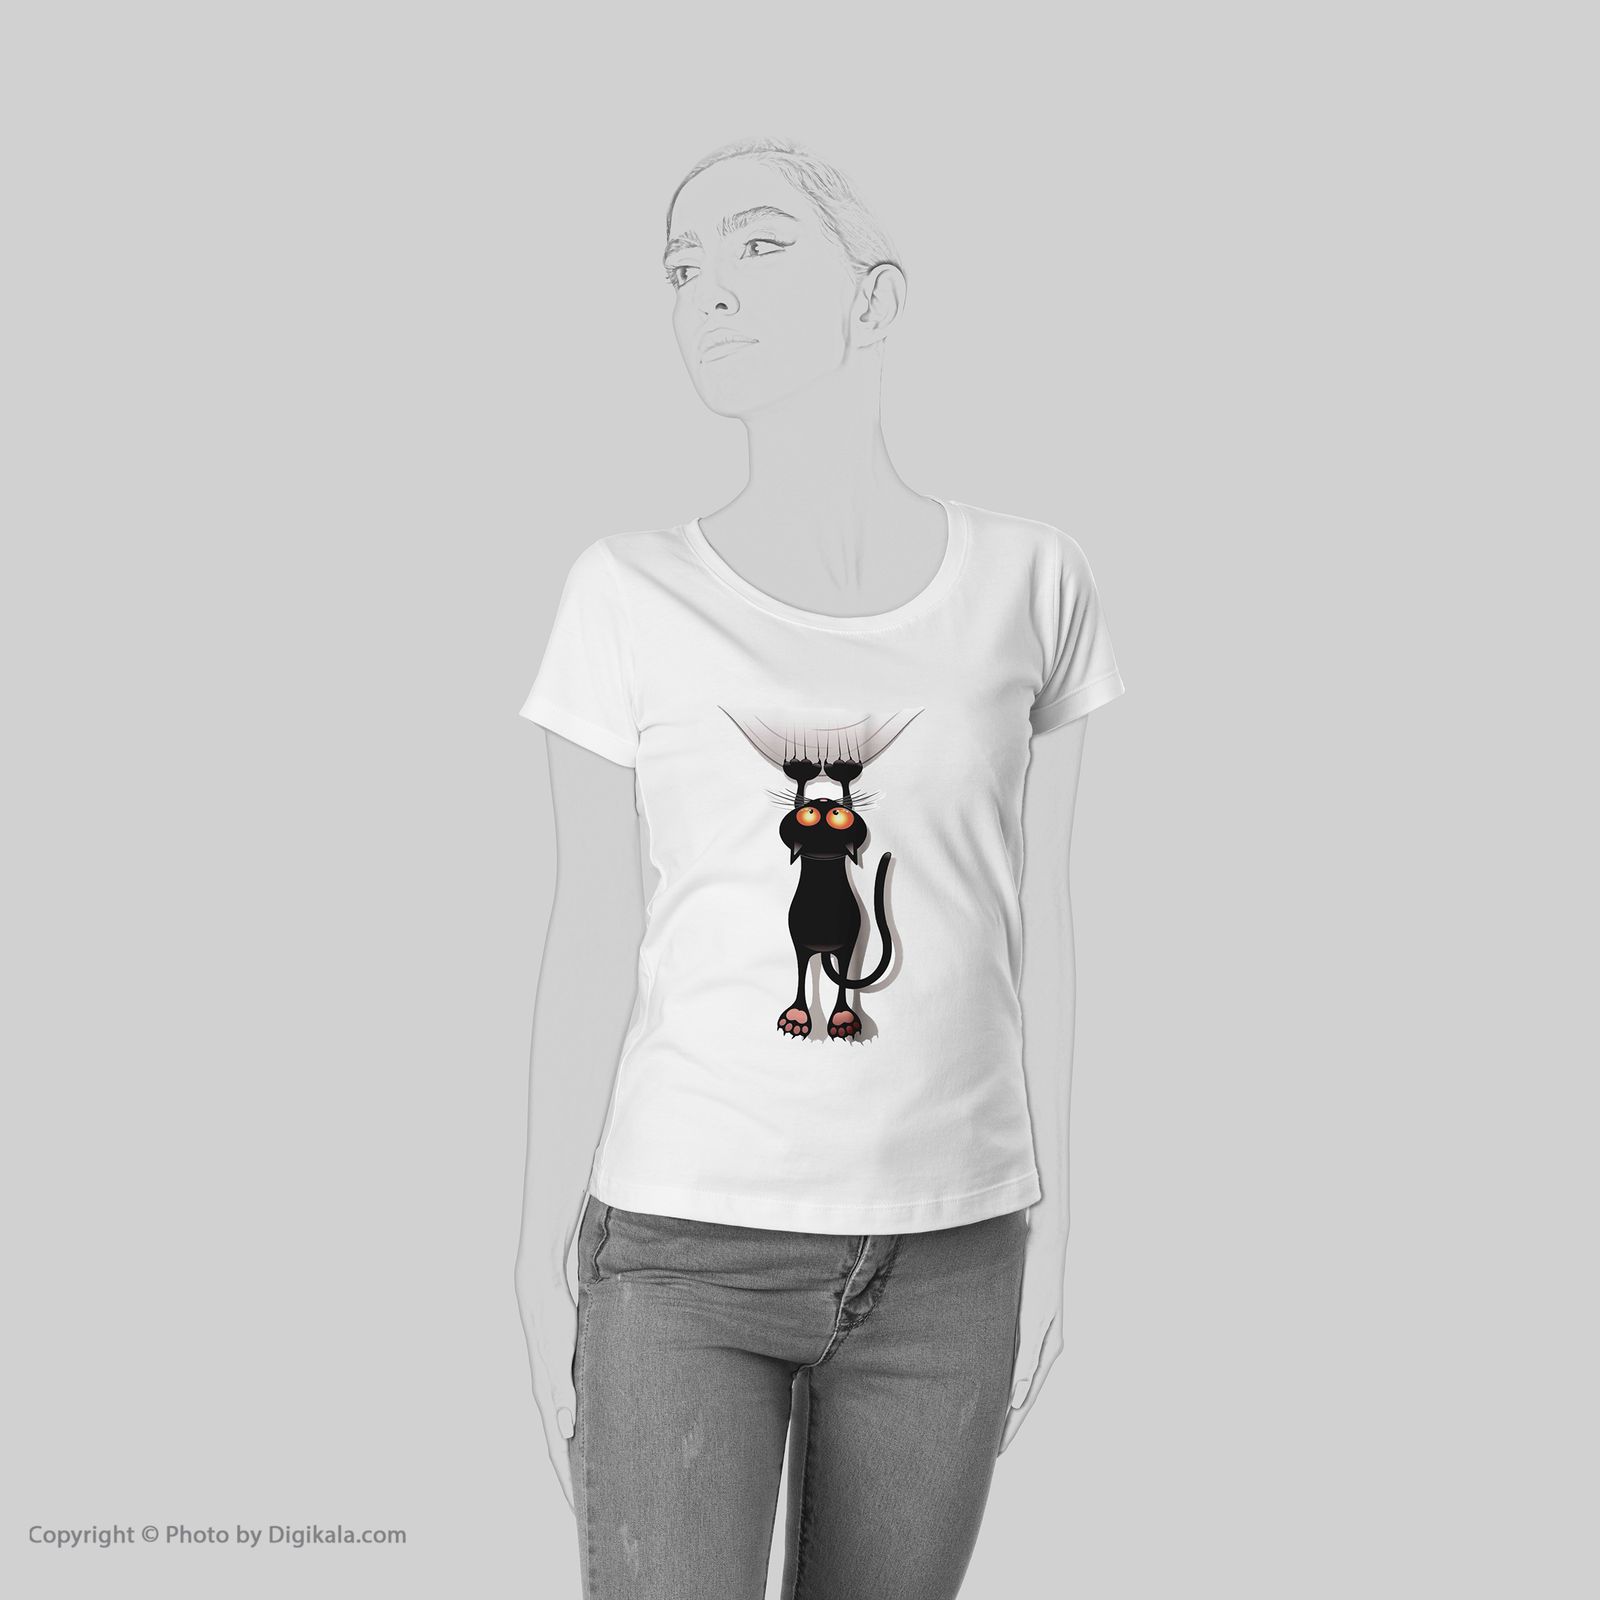 تی شرت به رسم طرح گربه کد 556 -  - 6